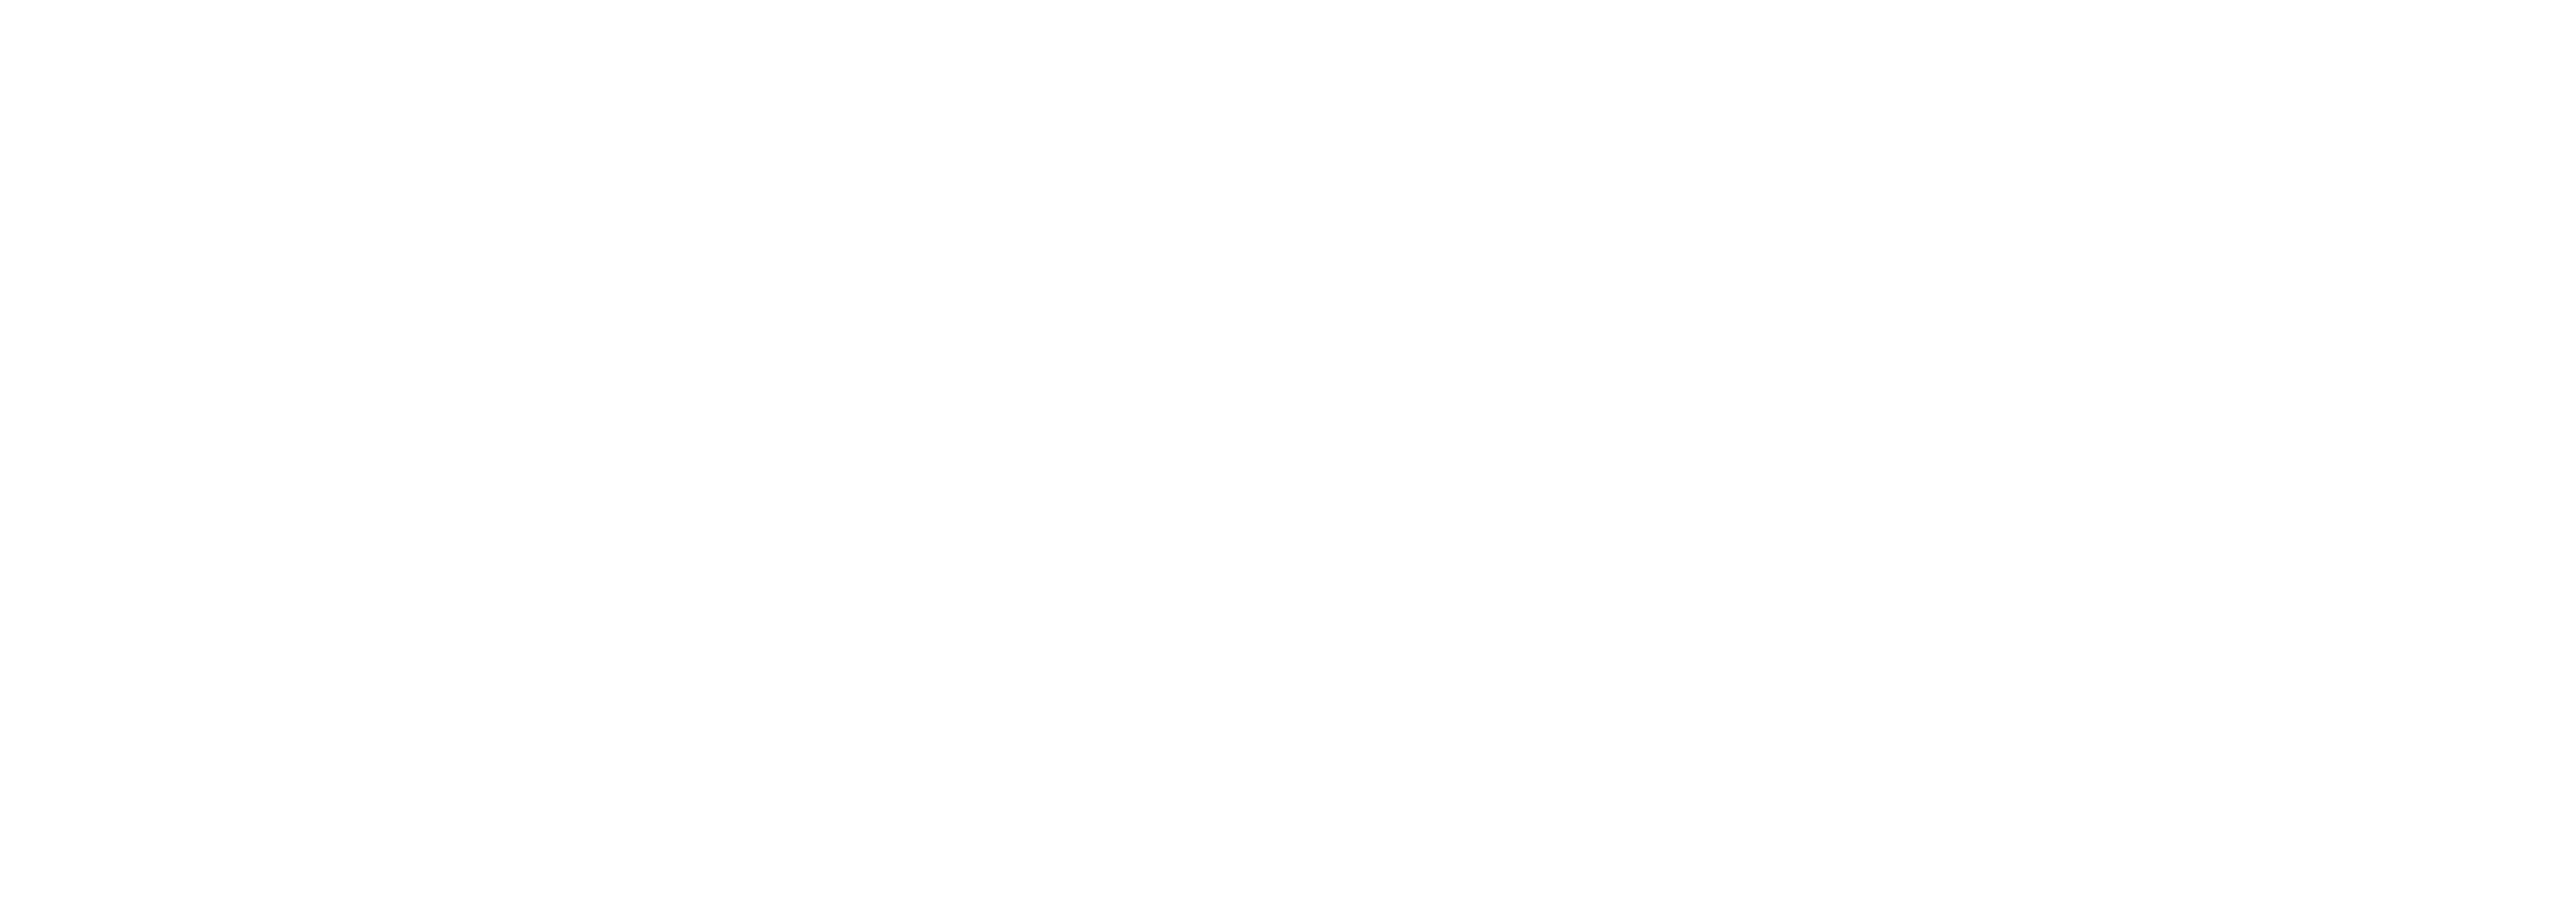 Awaked Coffee - O melhor café entregue à sua porta